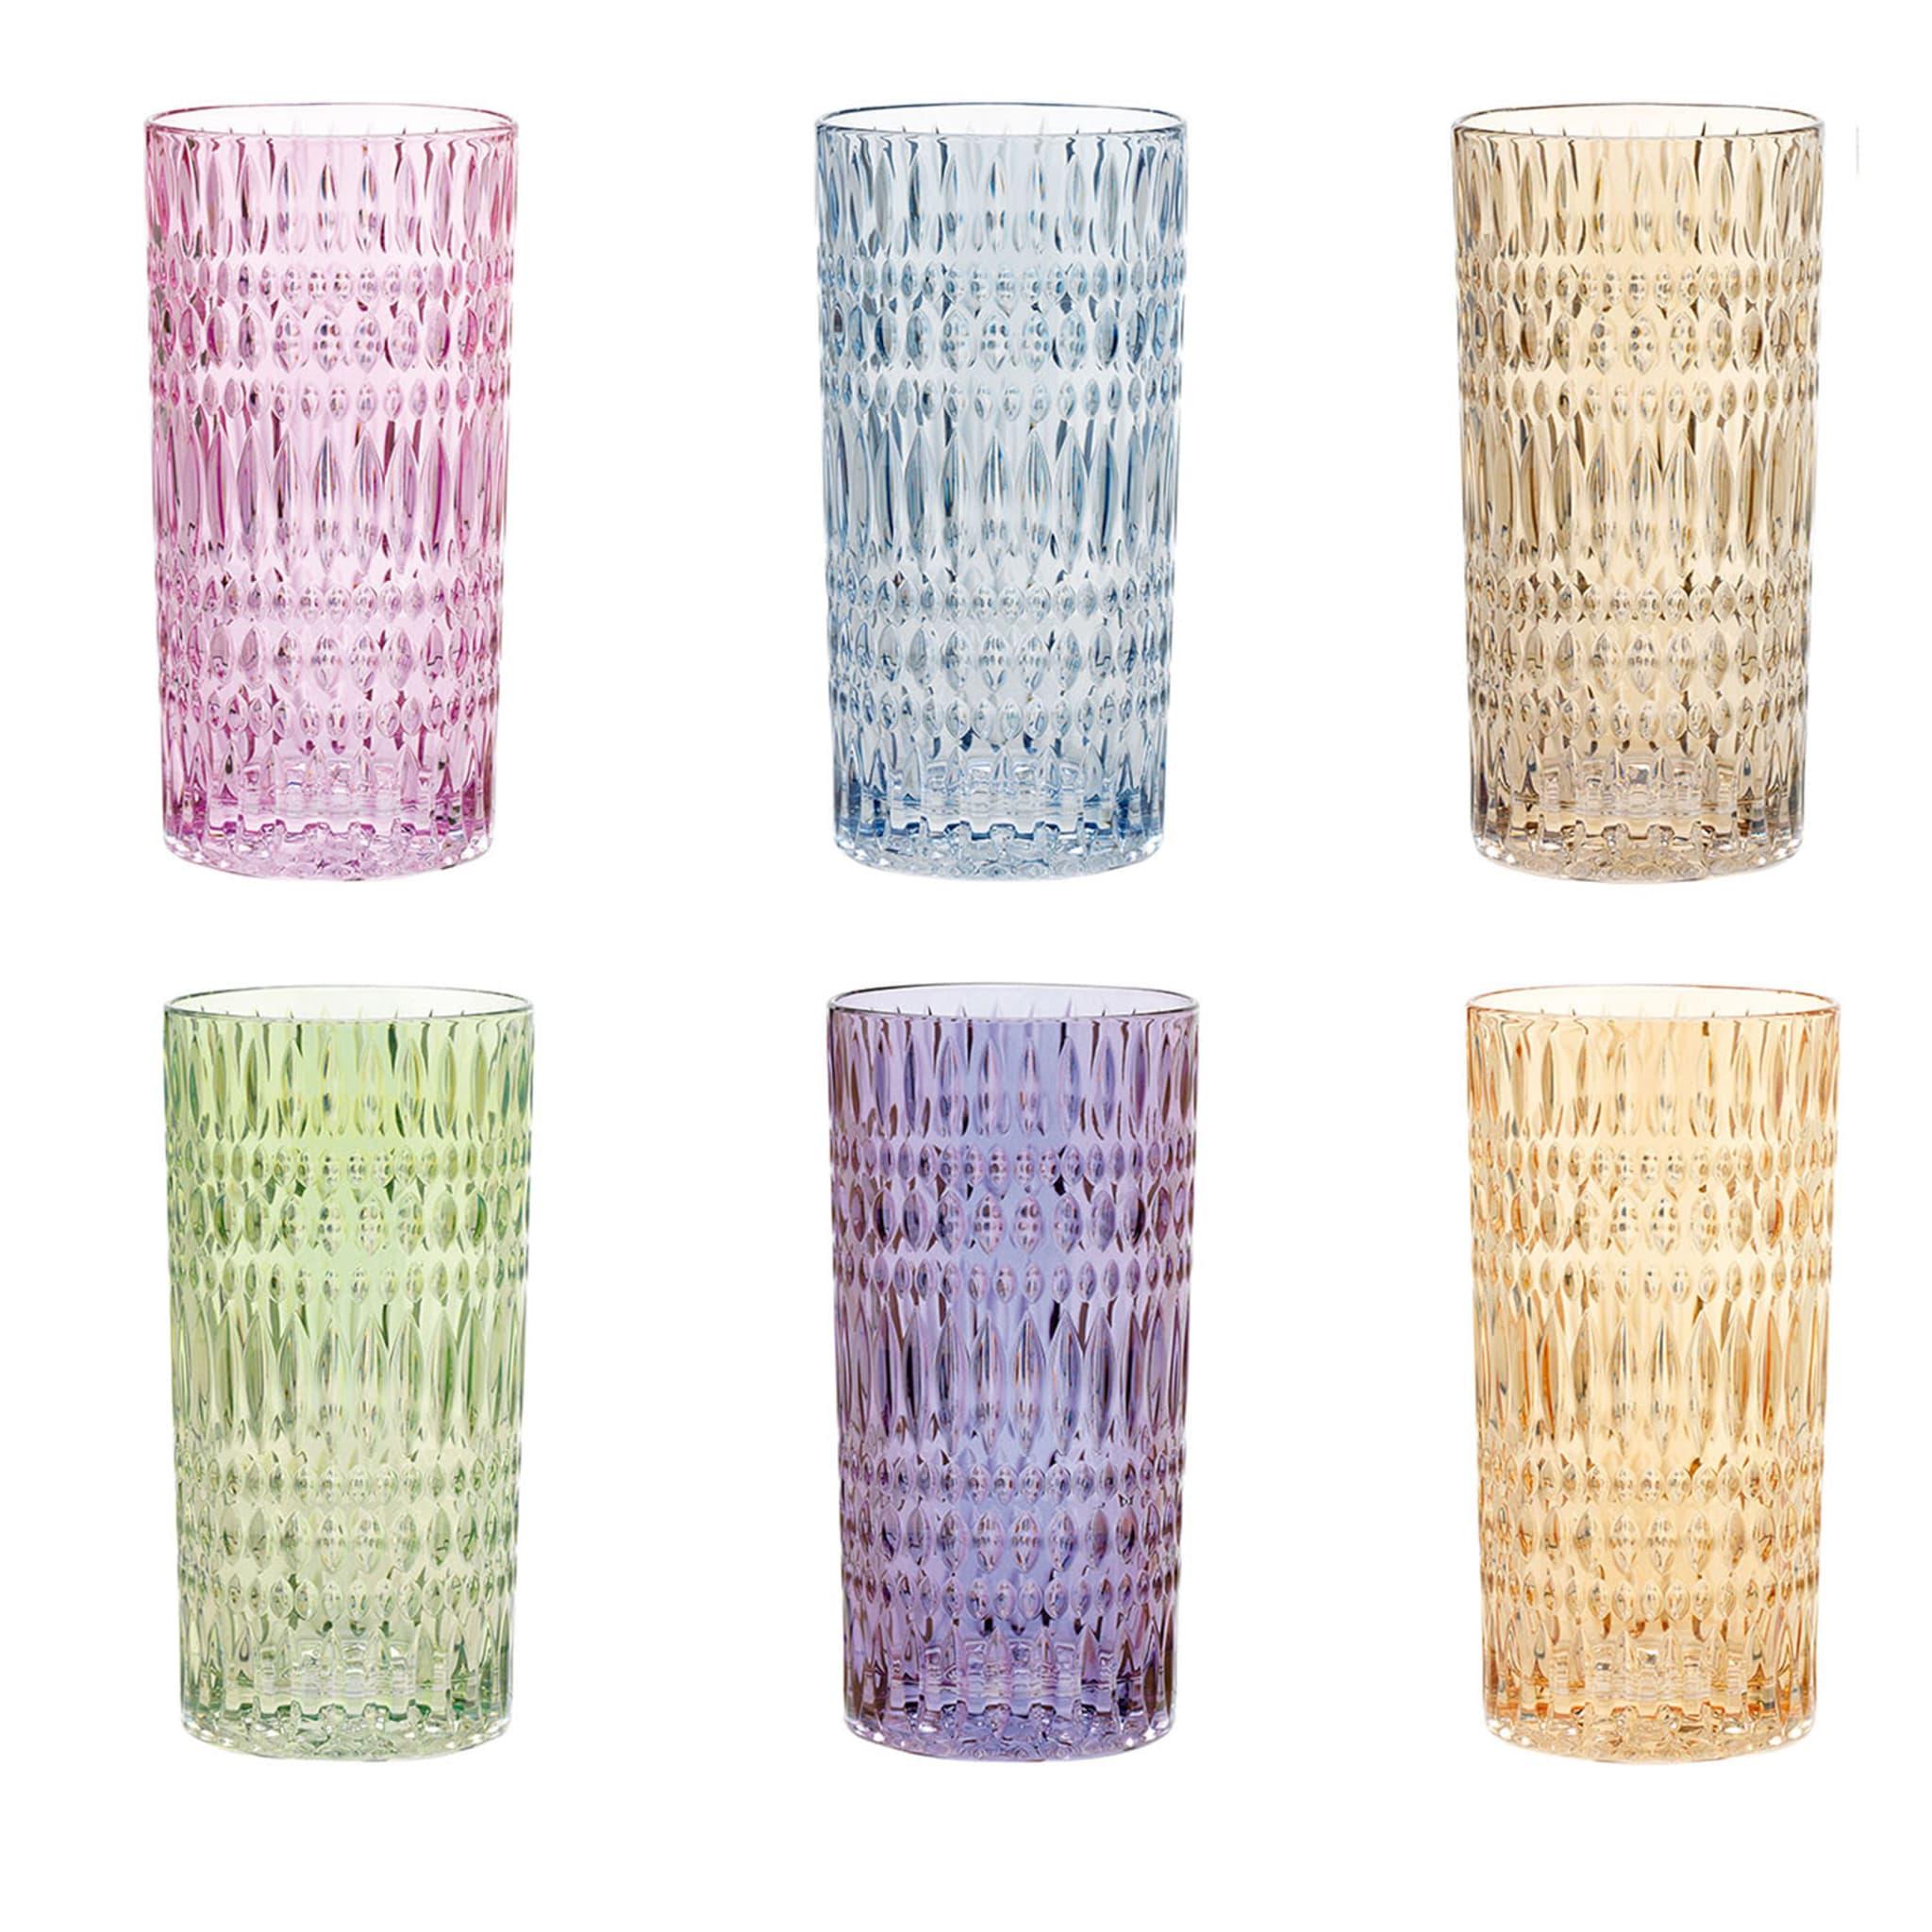 Die sechs Trinkgläser dieses farbenfrohen Sets zeichnen sich durch verblüffende manuelle Ätzungen aus. Die aus feinem Glas gefertigten Stücke sind in leuchtenden Farben gehalten - Azur, Beige, Rosa, Gelb, Violett bzw. Grün - und machen dieses Set zu